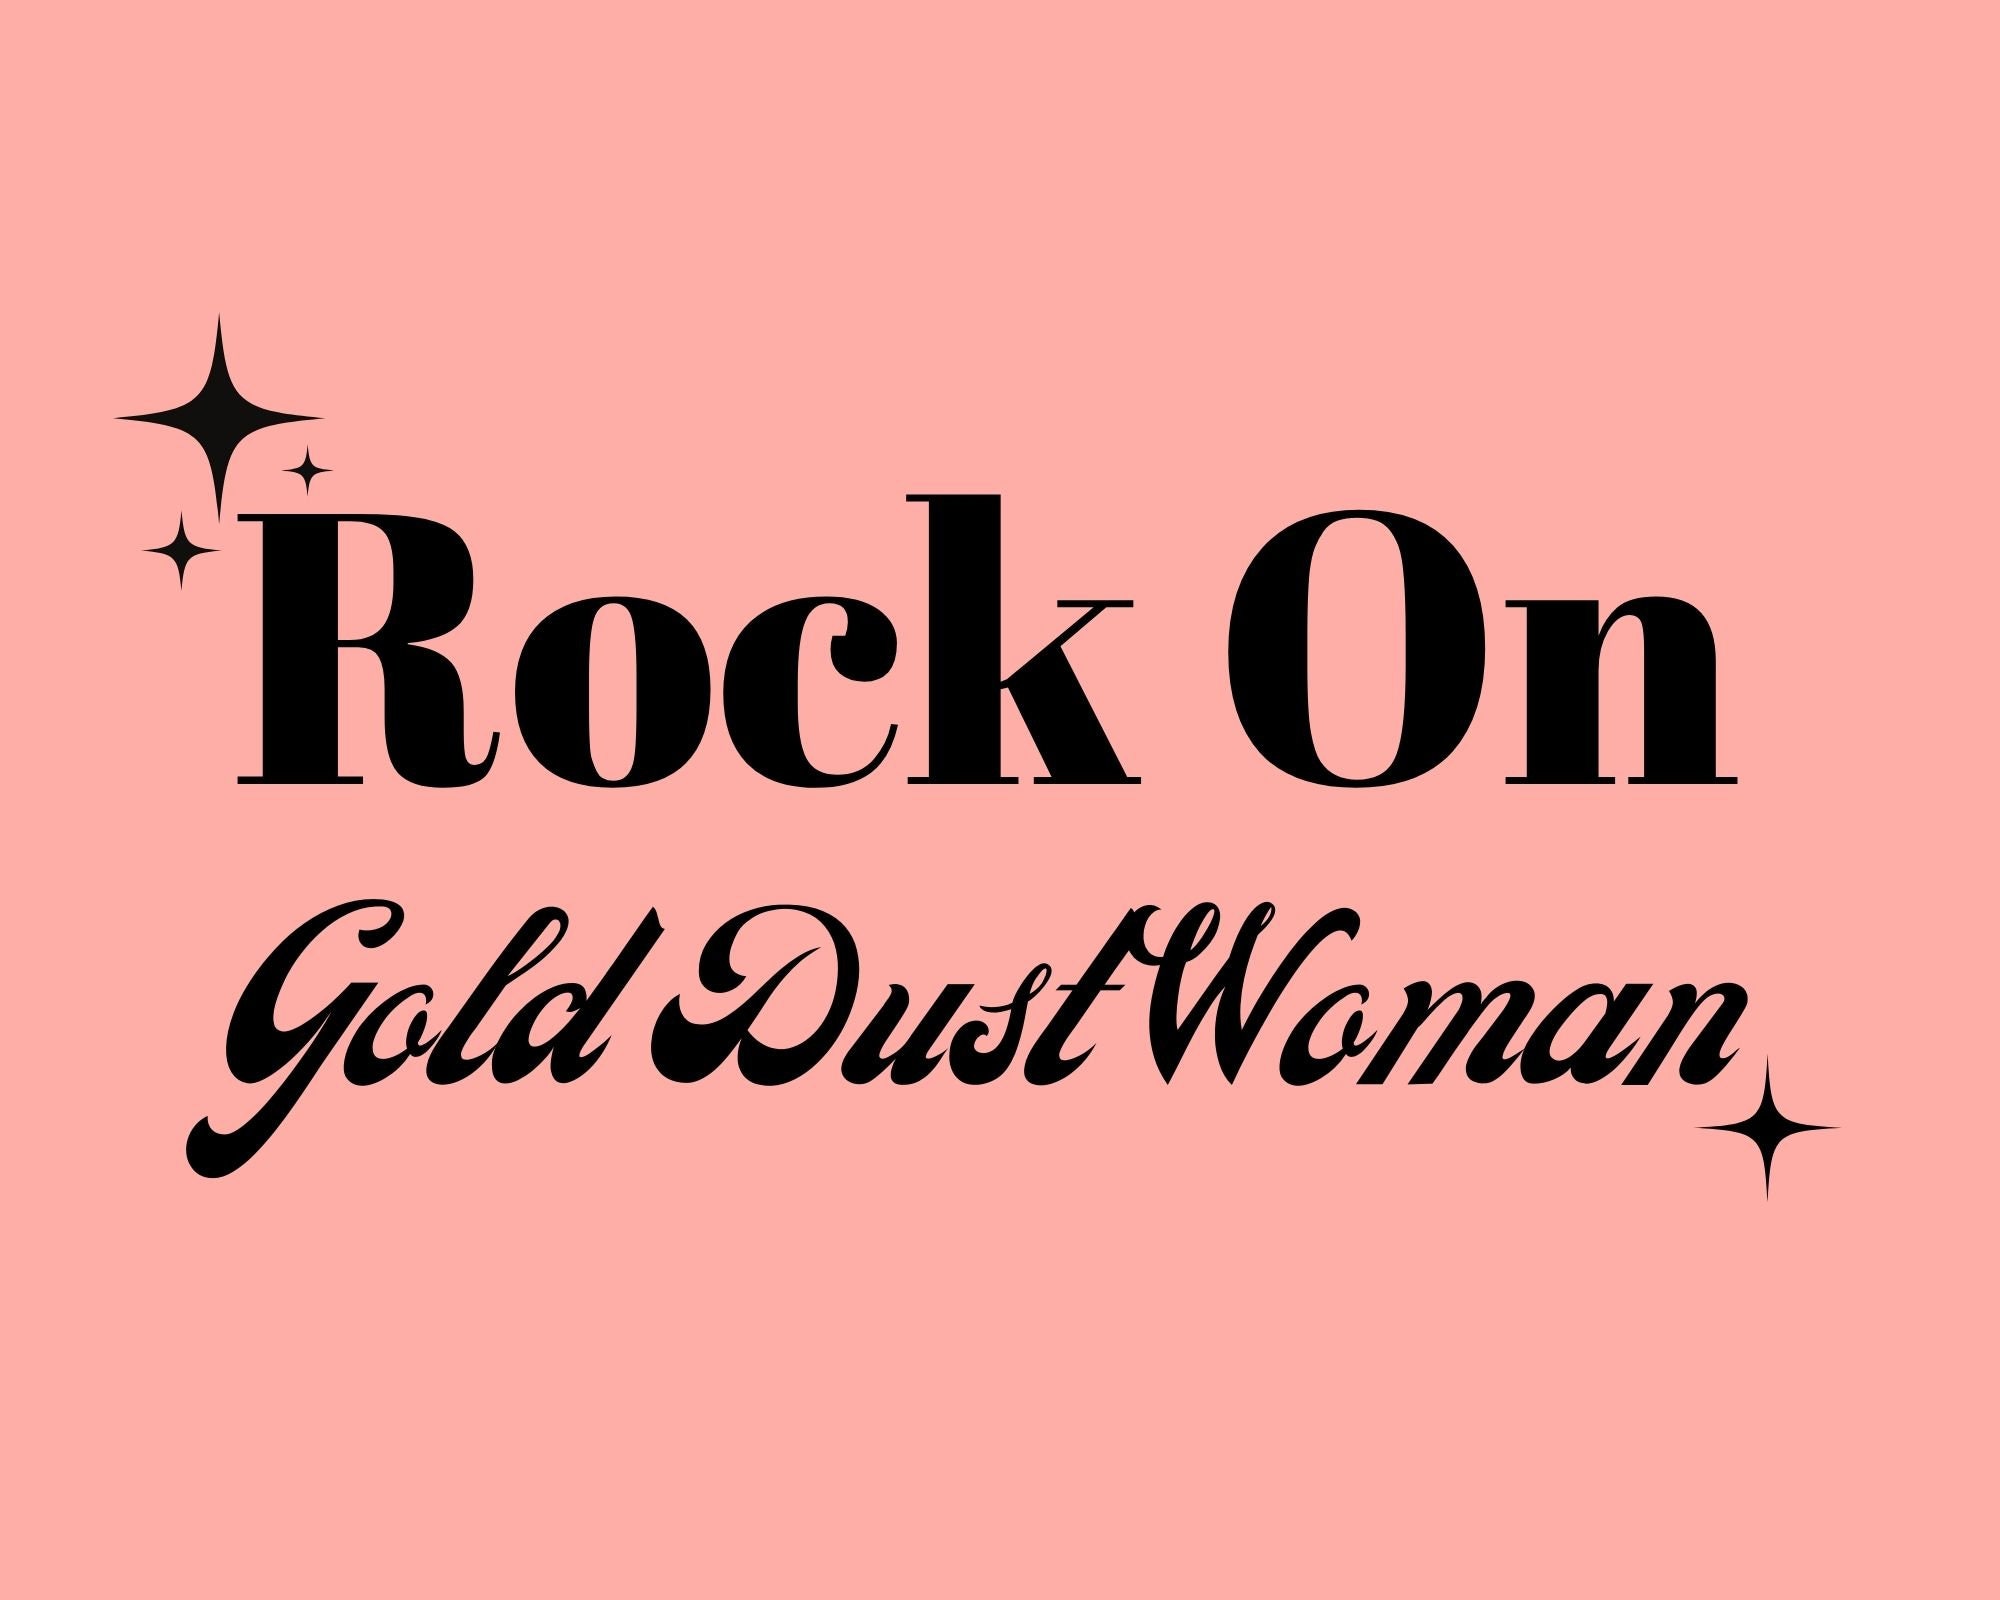 Gold Dust Woman Lyrics Print Music Print A5 A4 A3 